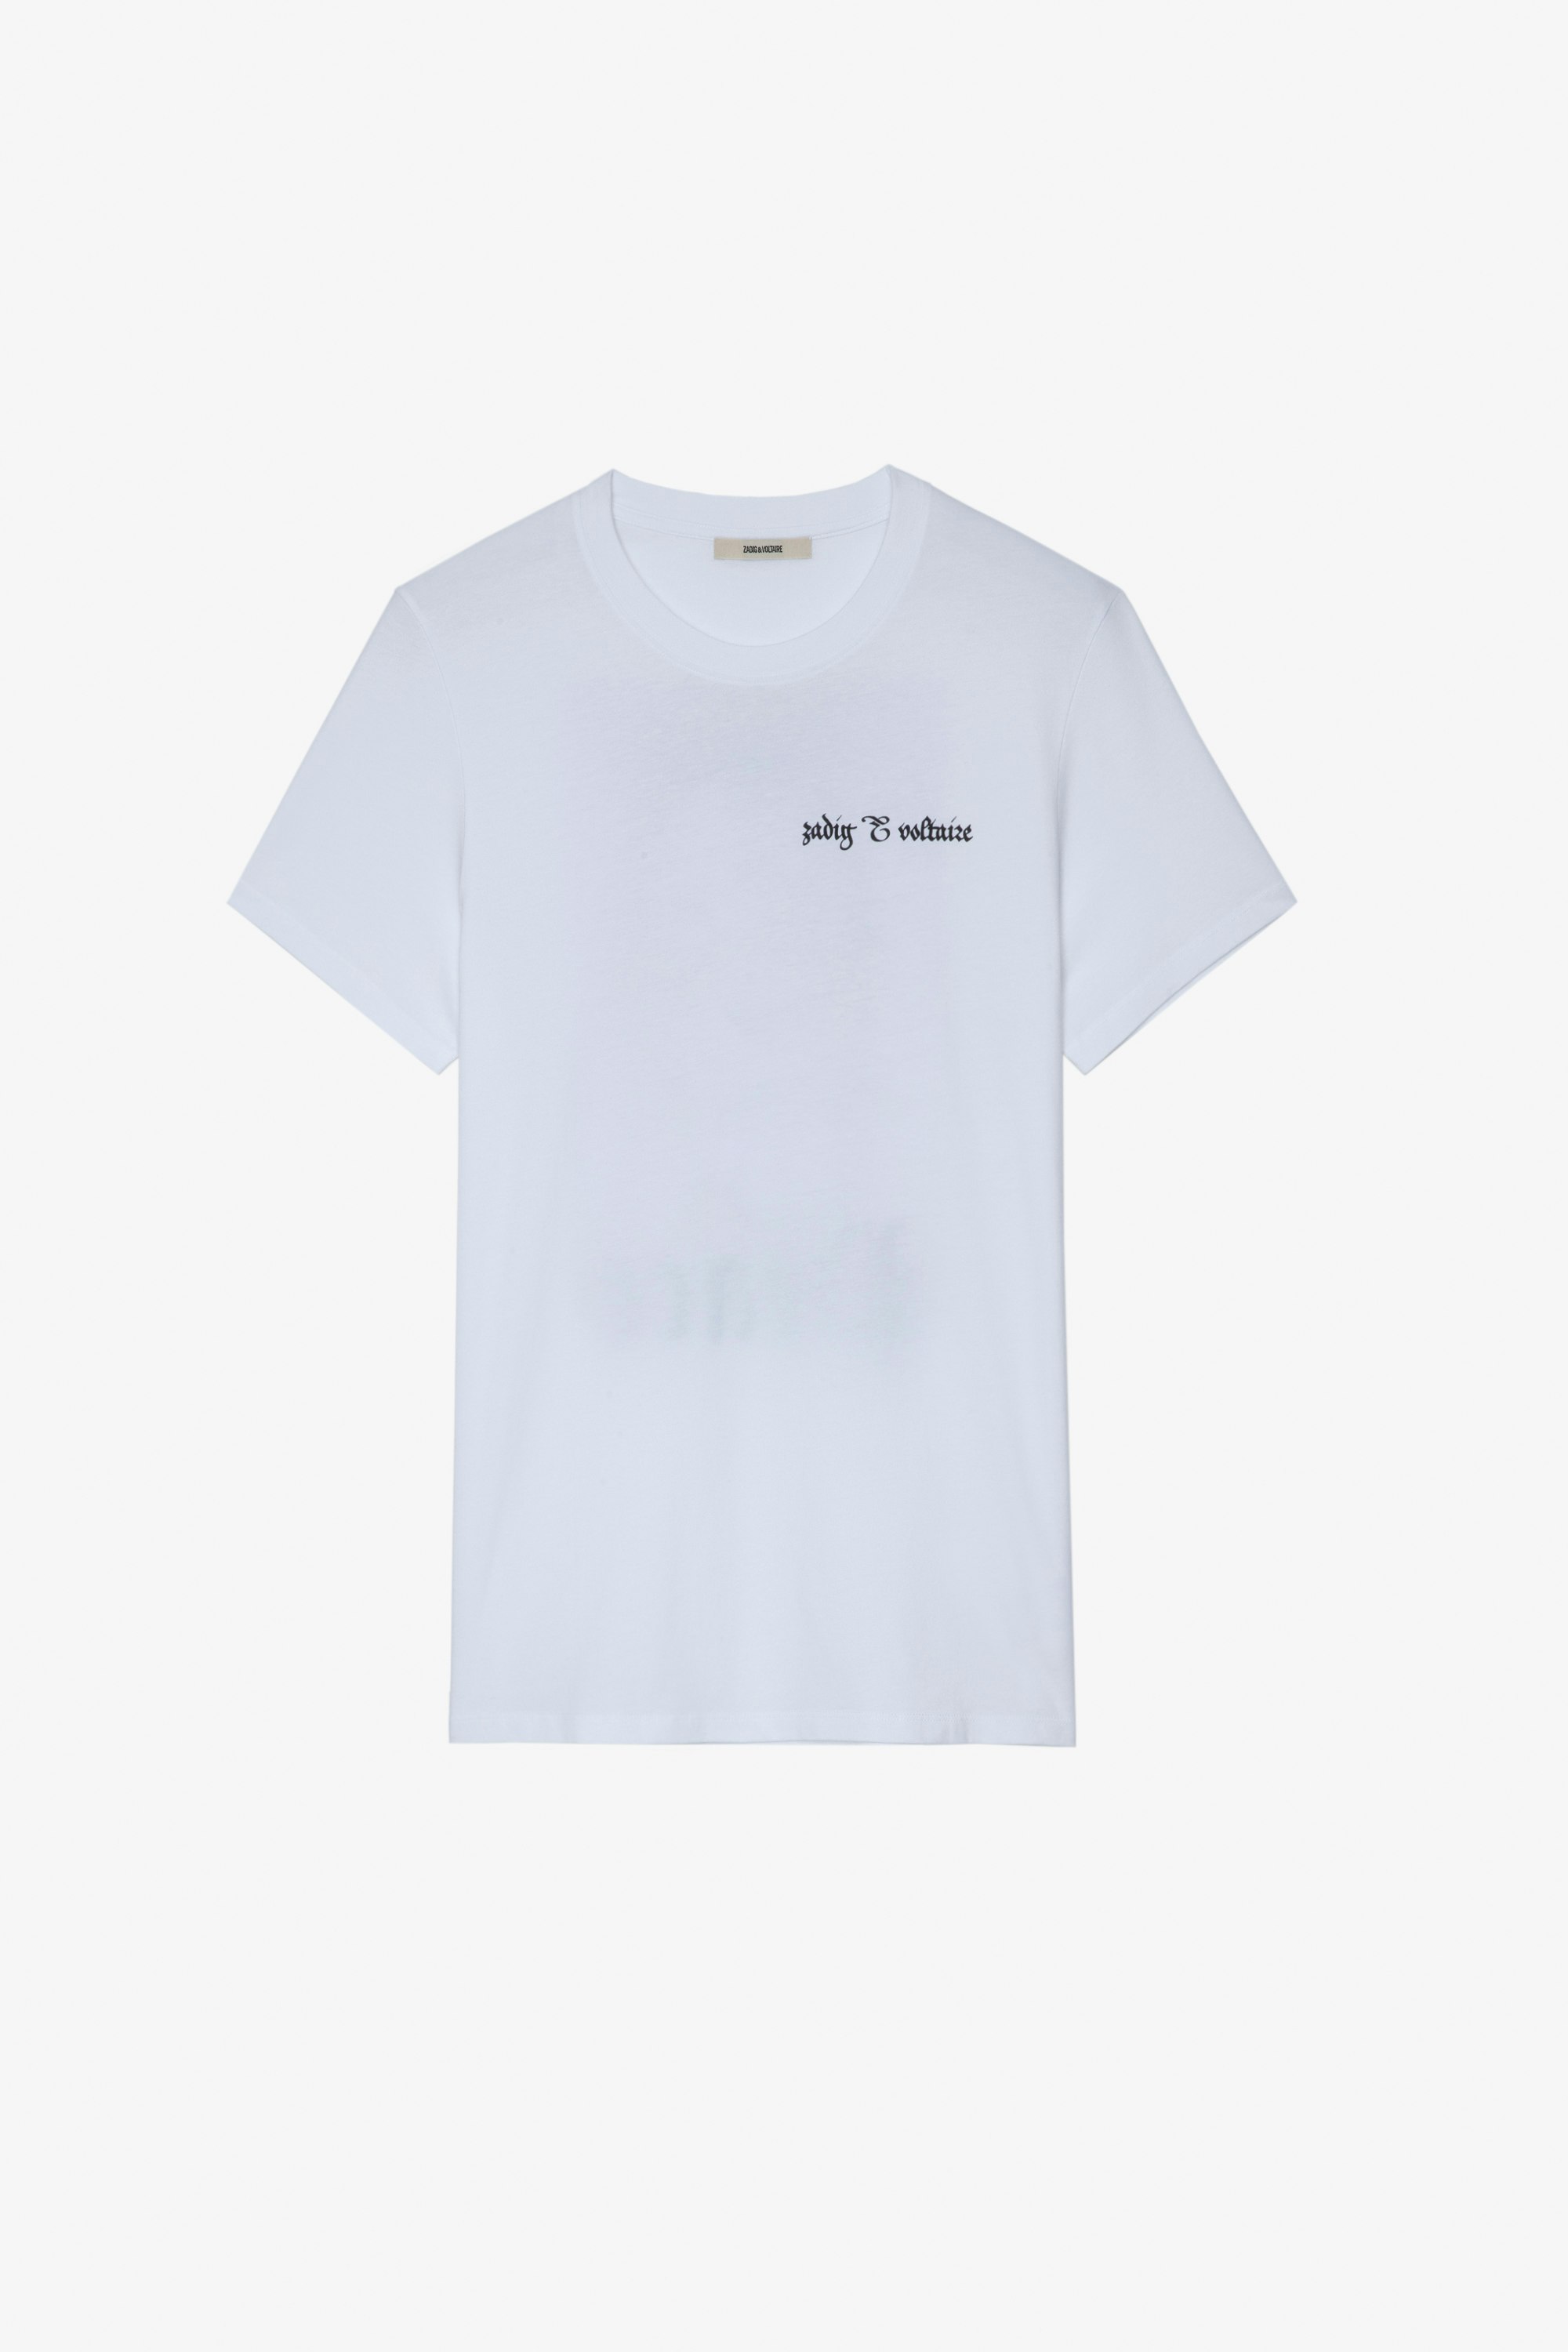 T-Shirt Ted Herren-T-Shirt aus weißer Baumwolle mit ZV-Signatur auf der Vorderseite und „Peace“-Löwen-Fotoprint auf der Rückseite